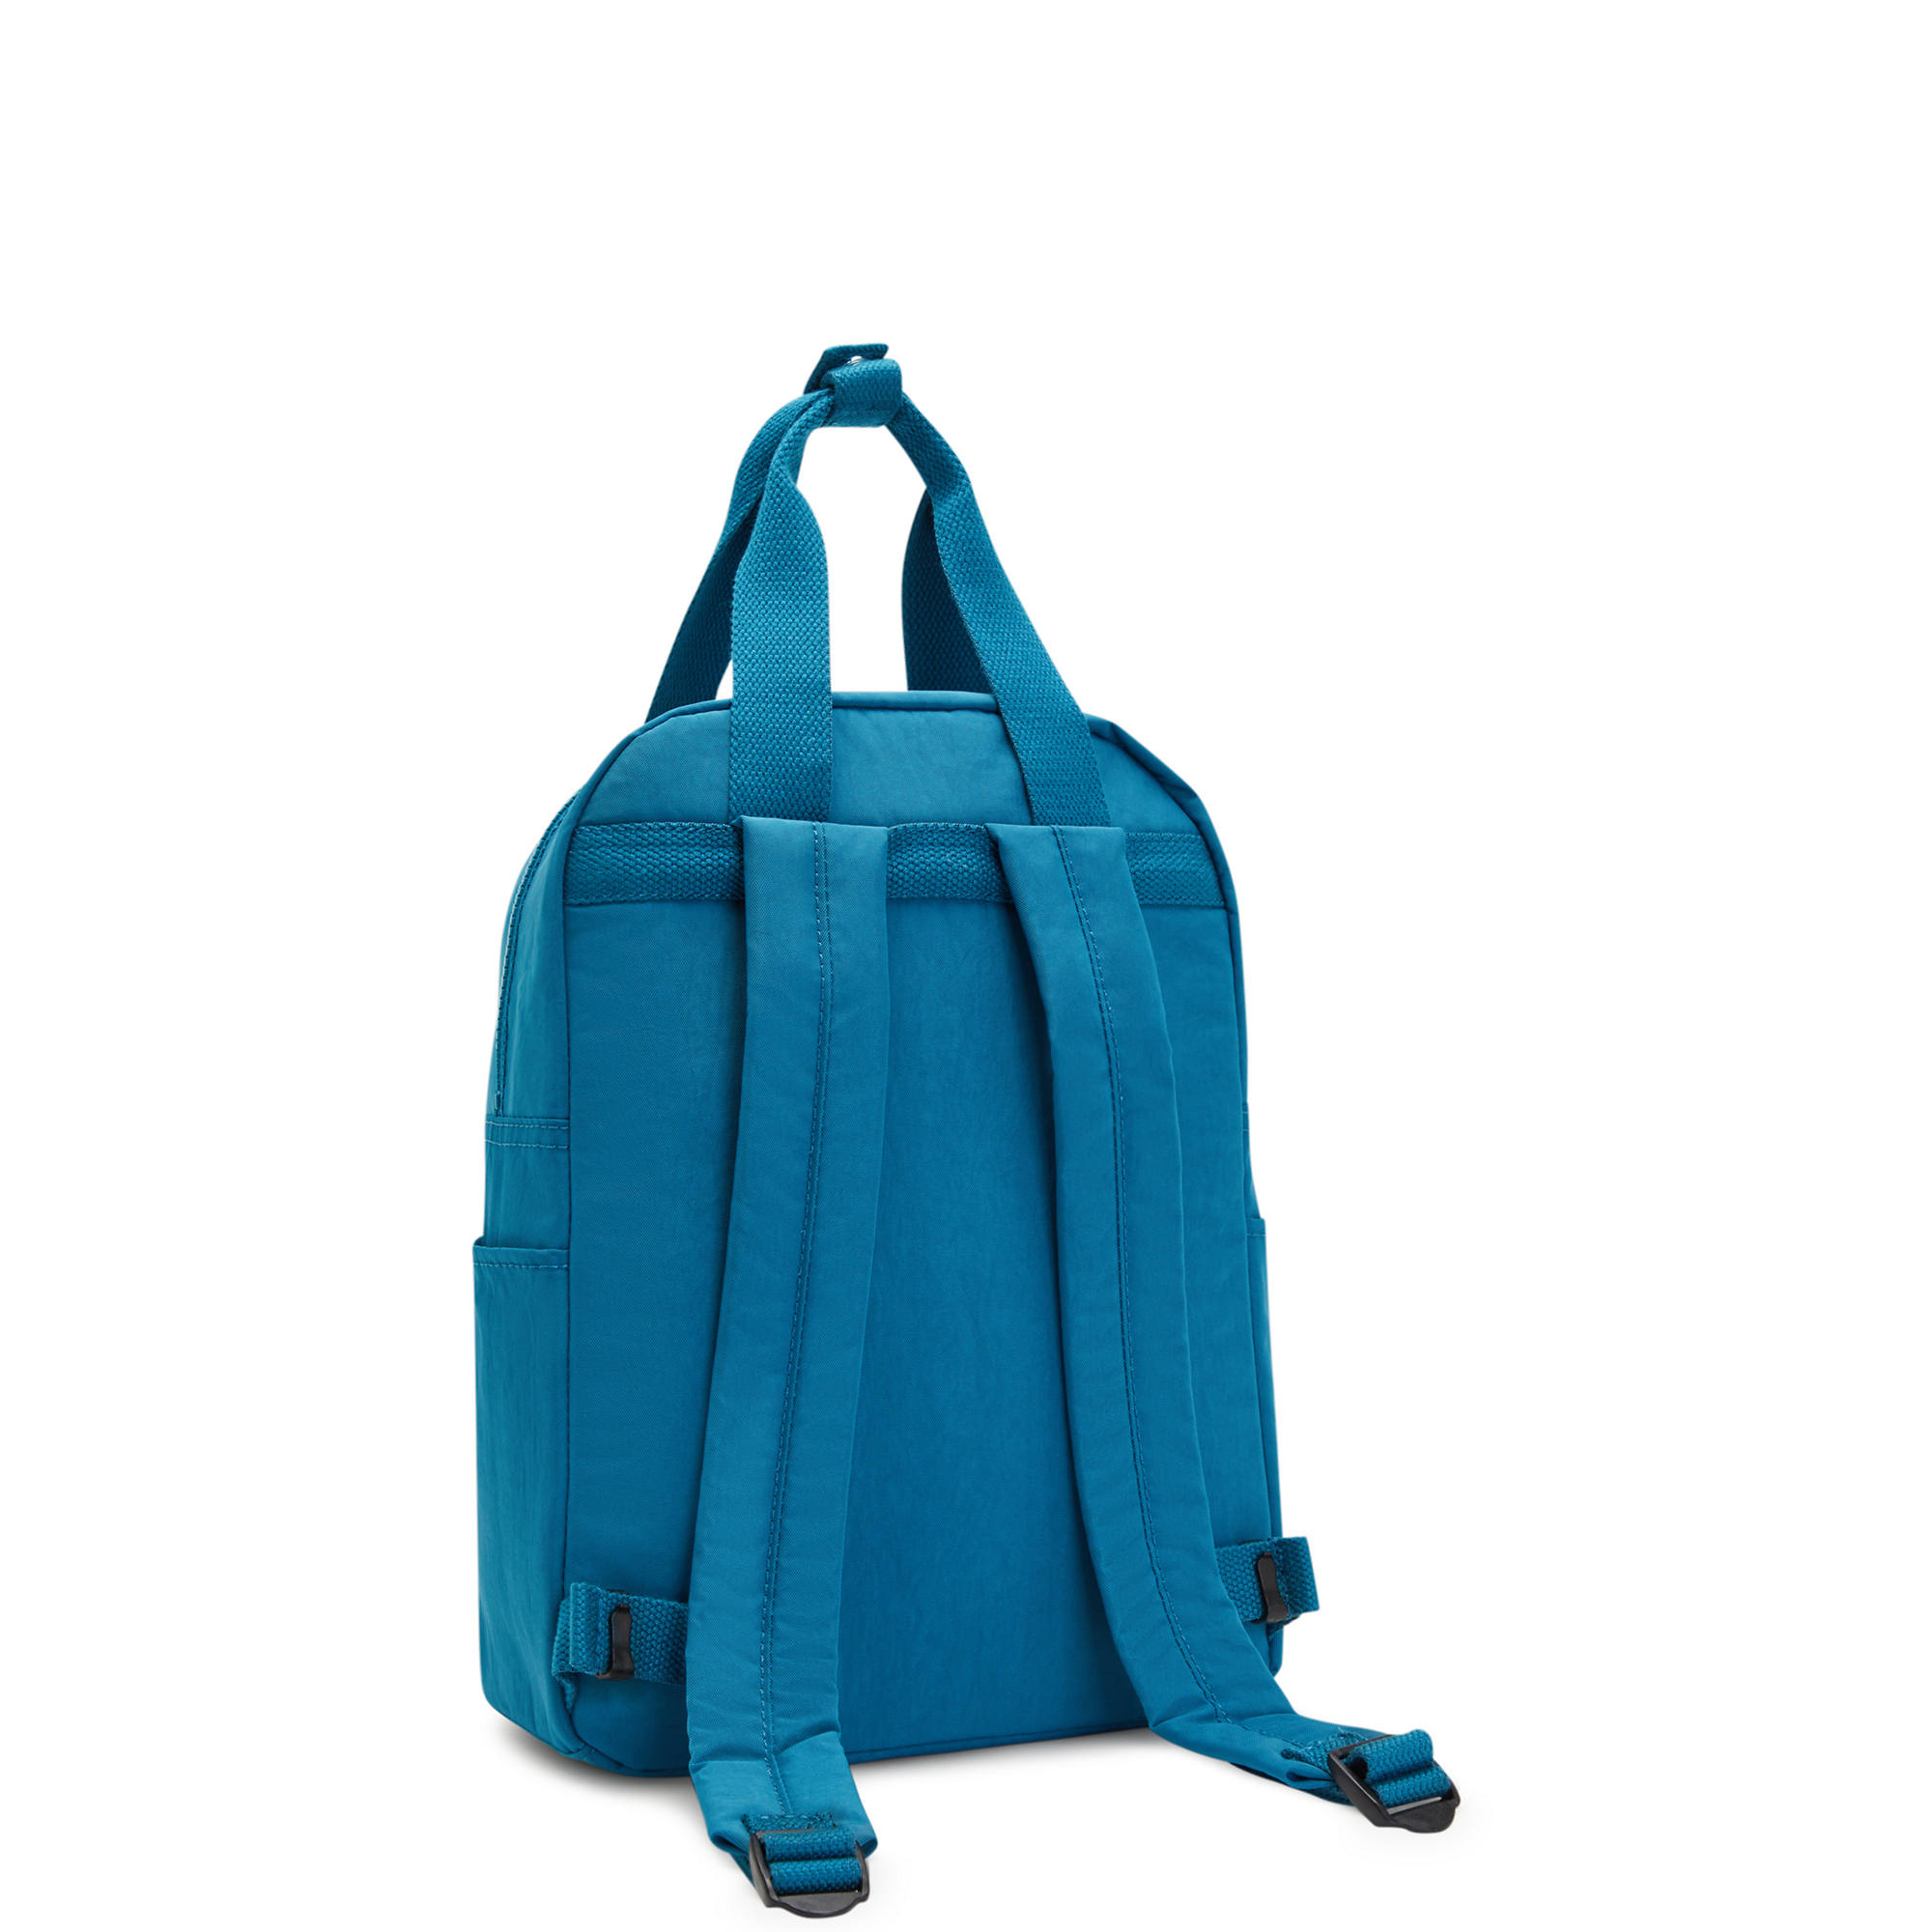 Kipling Siva Backpack | eBay